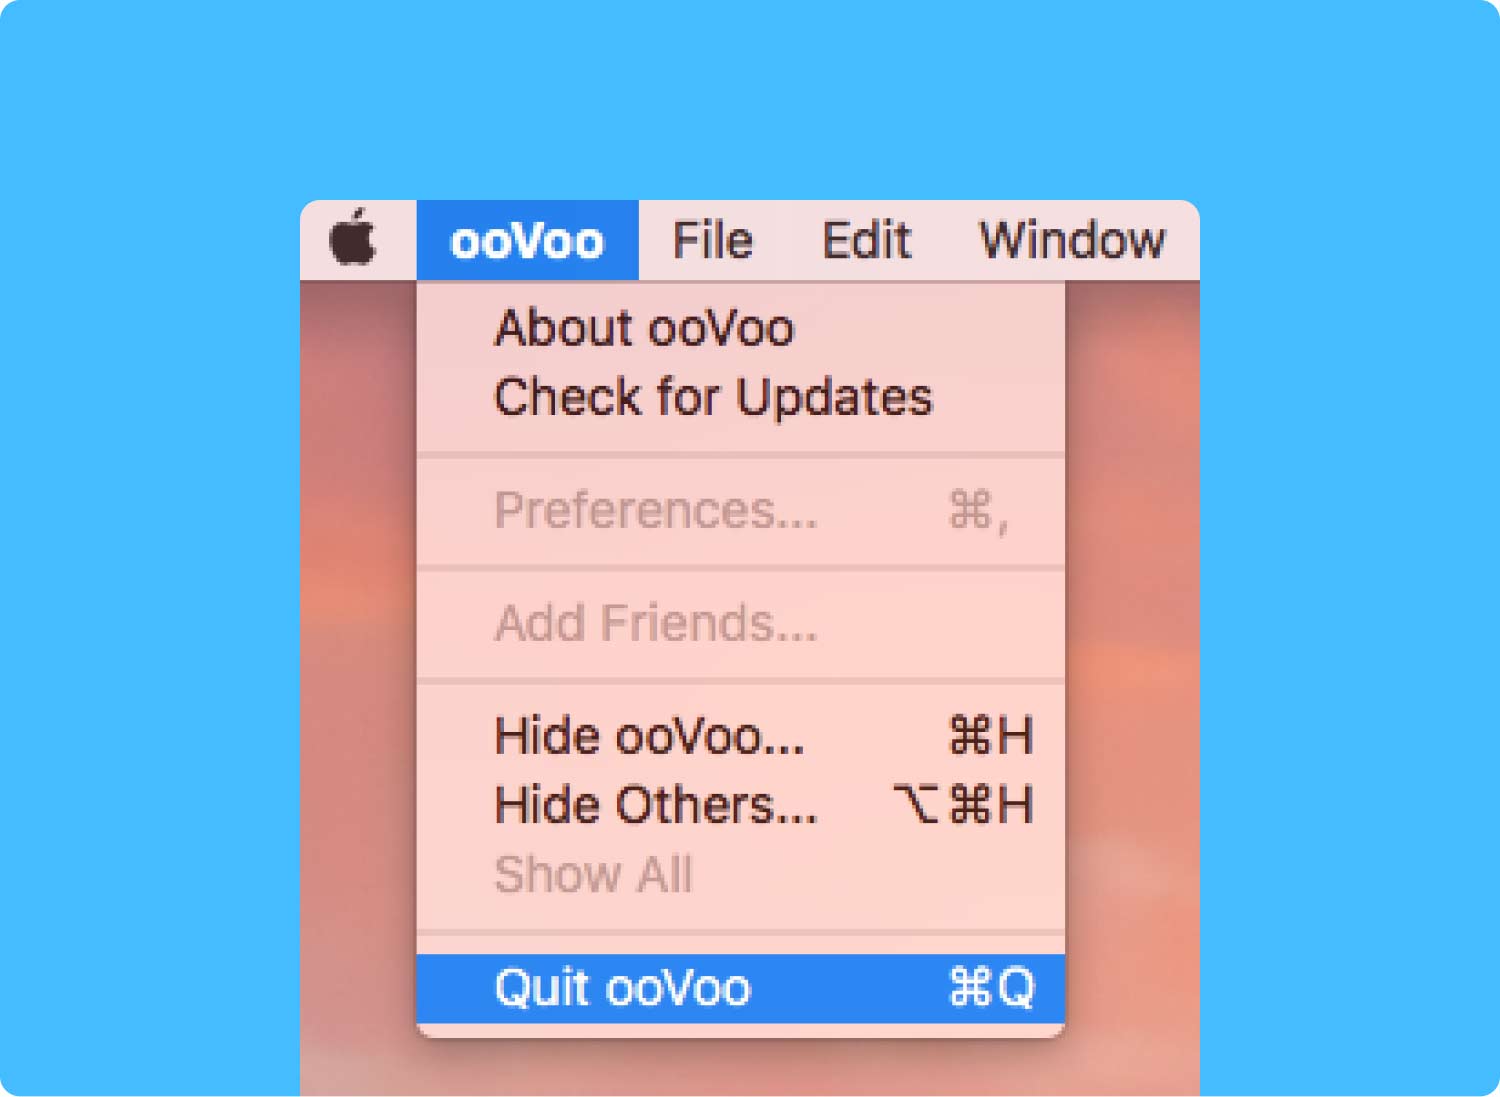 قم بإلغاء تثبيت ooVoo على نظام Mac من خلال برنامج إلغاء التثبيت المدمج بالكامل